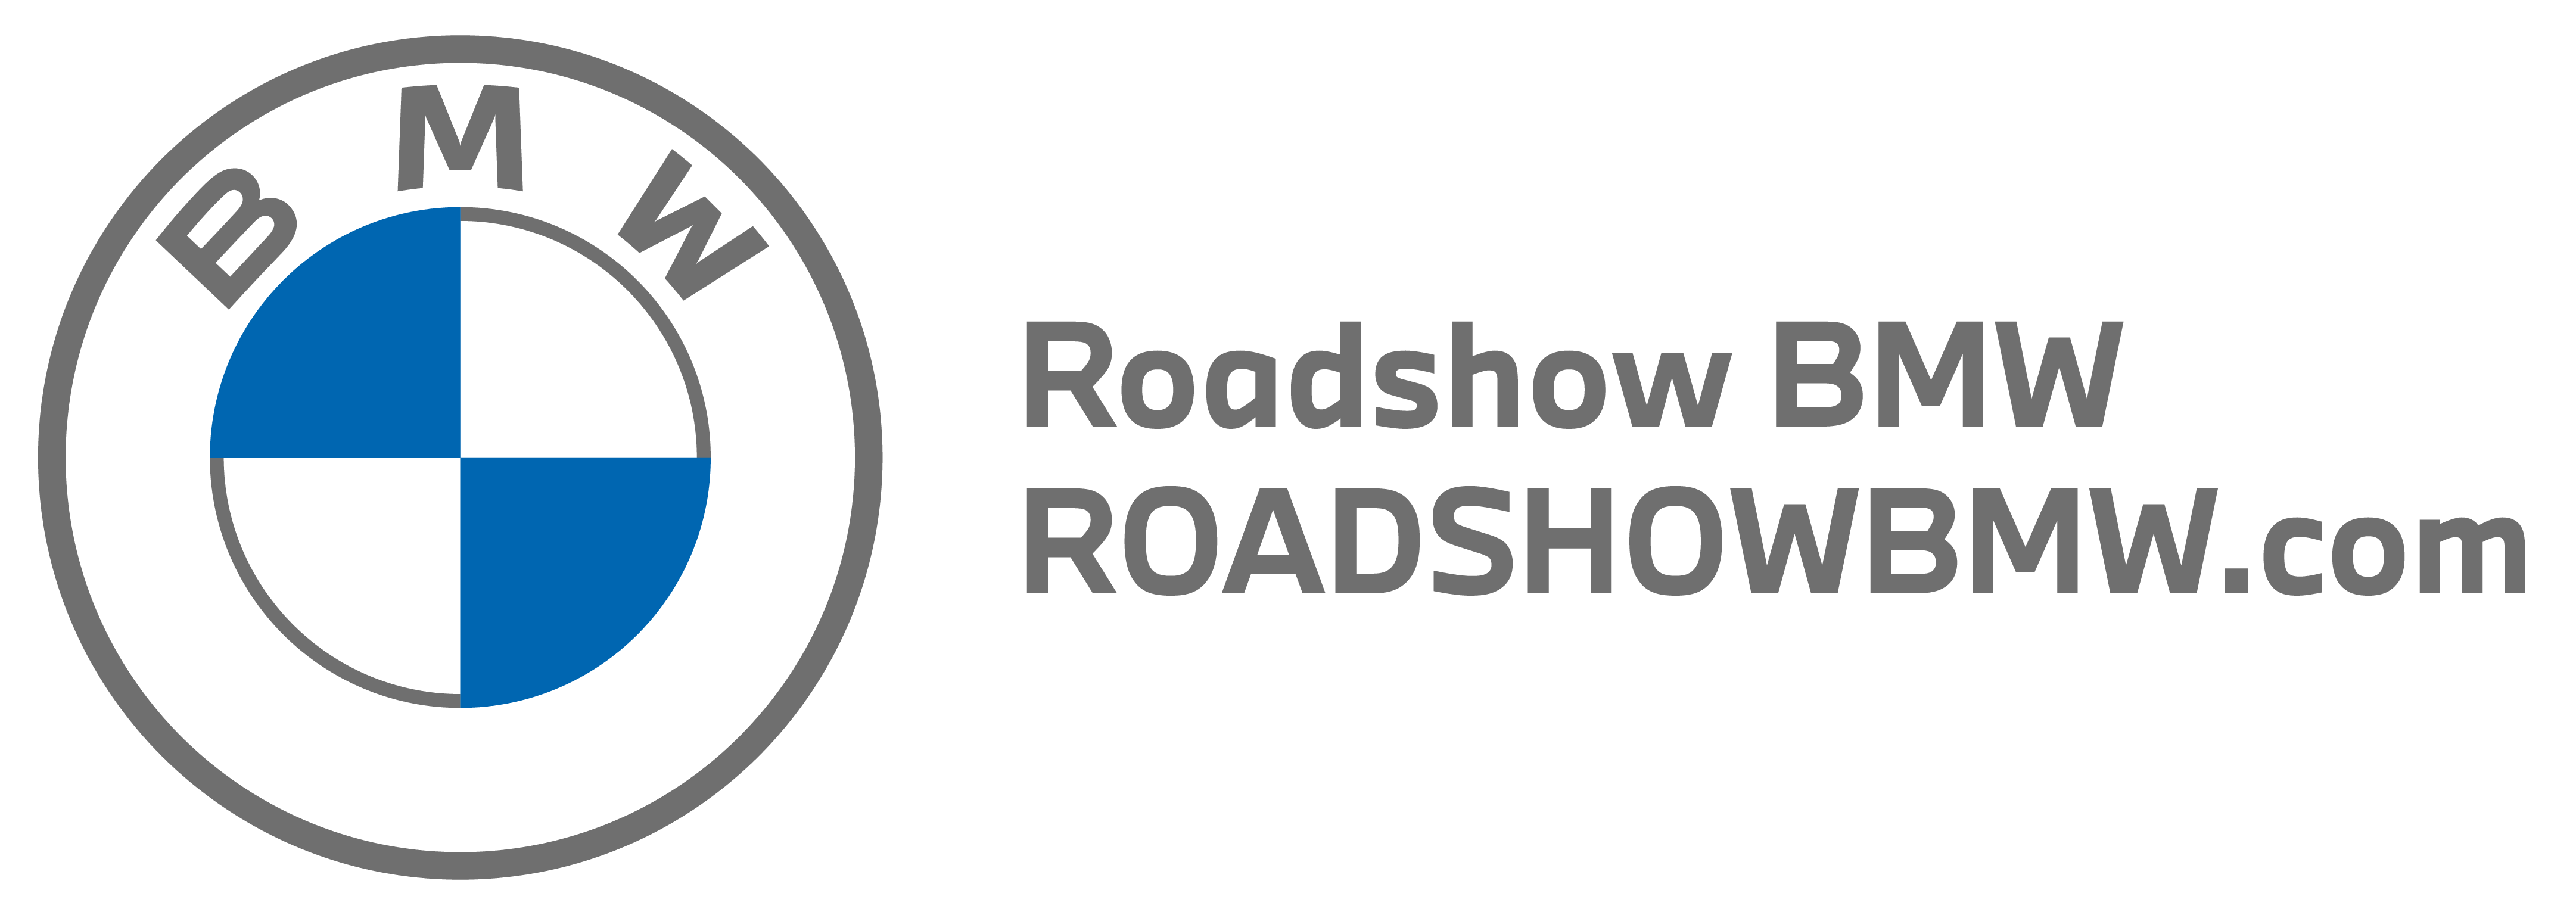 Roadshow BMW Logo Fallback Horiz 2022 05 12